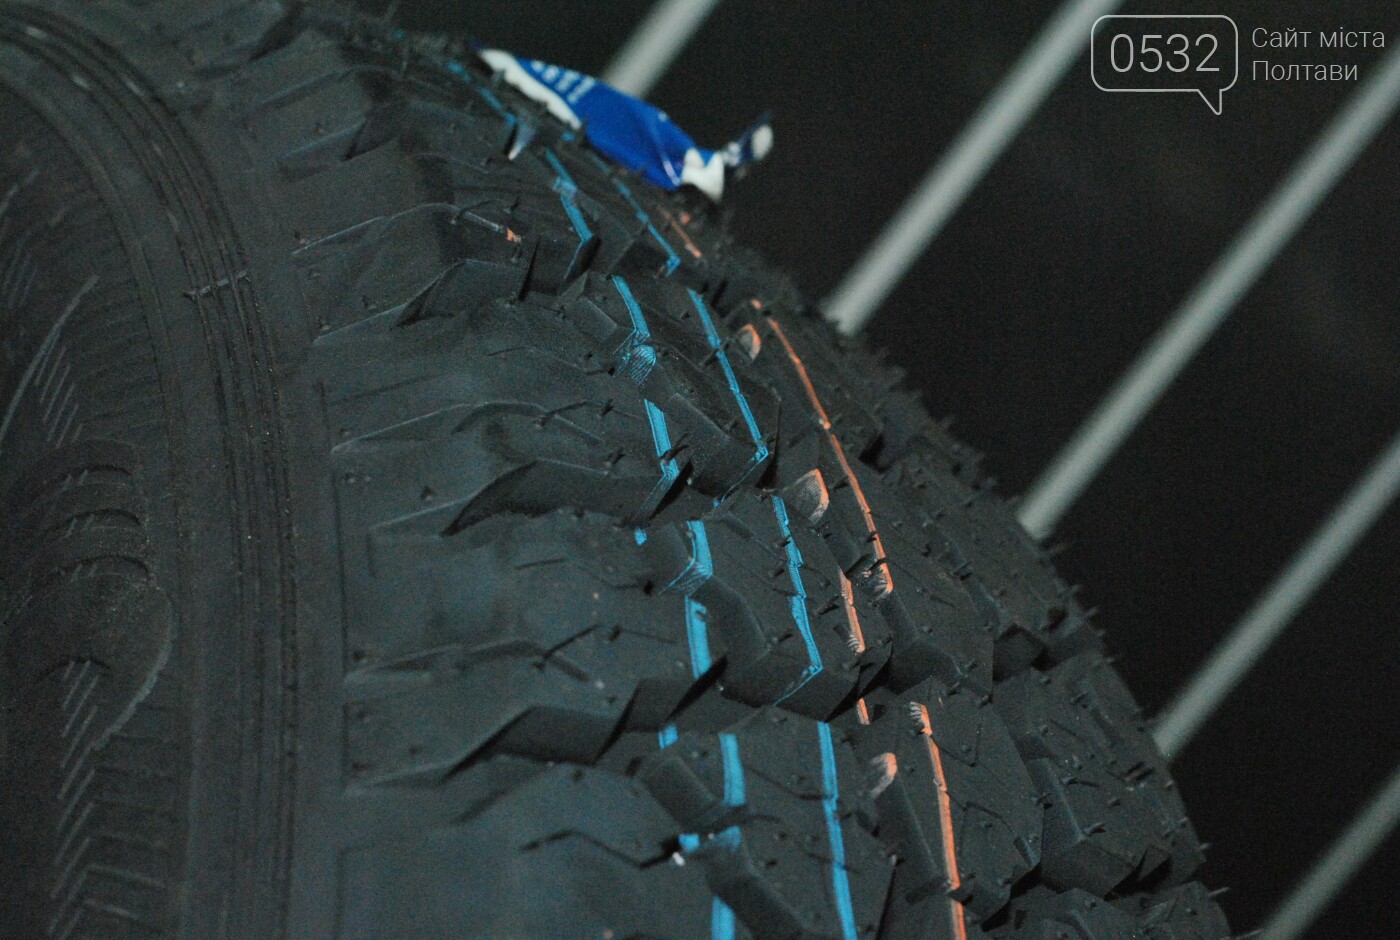 Замовляй – і забирай сьогодні: у Полтаві шинний центр пропонує найбільший асортимент гуми від відомих брендів